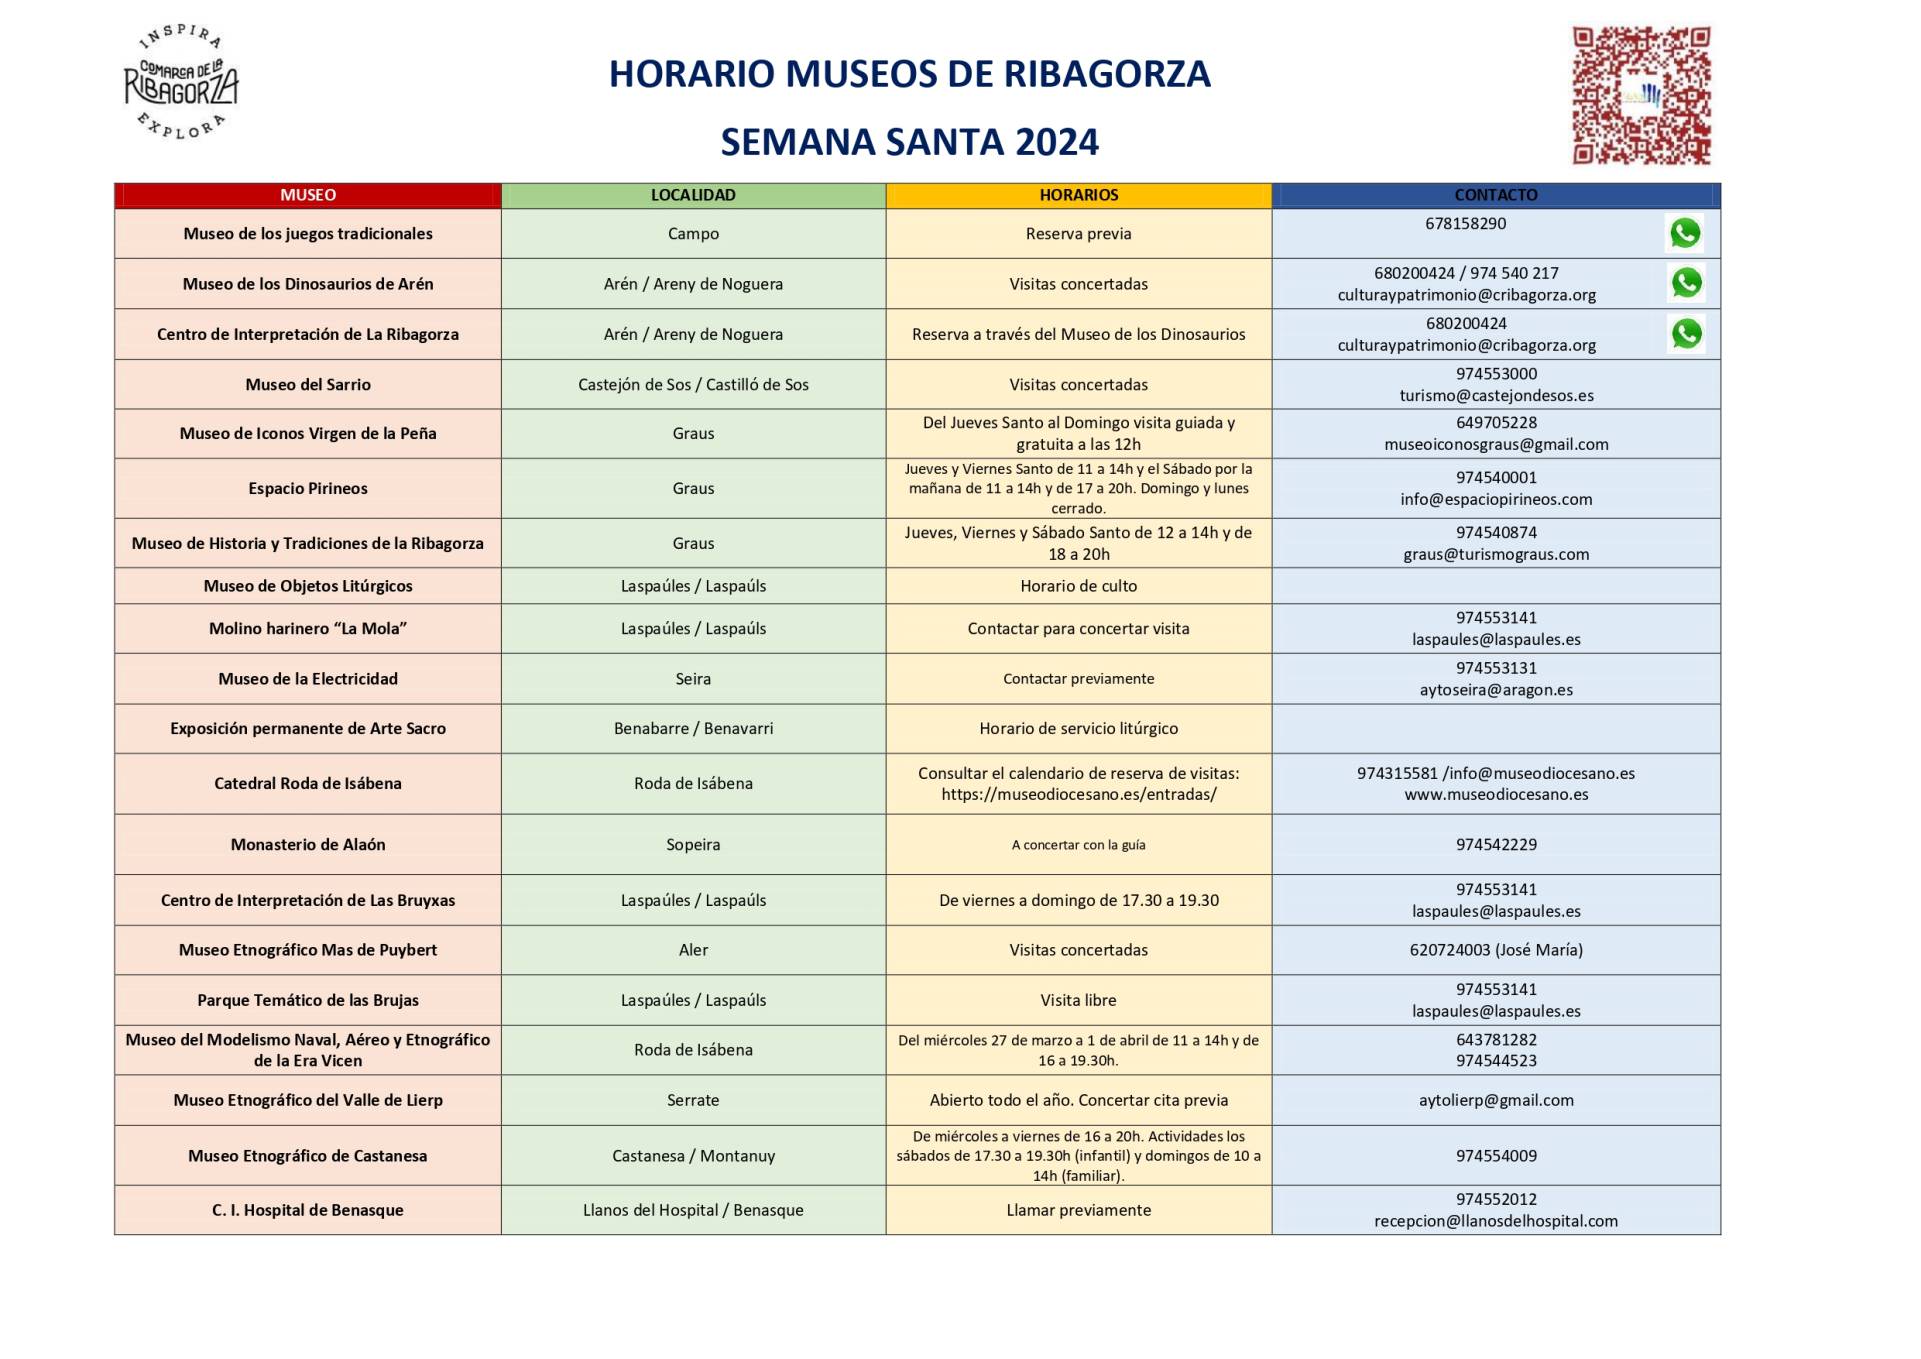 HORARIO DE LOS MUSEOS DE RIBAGORZA. SEMANA SANTA 2024